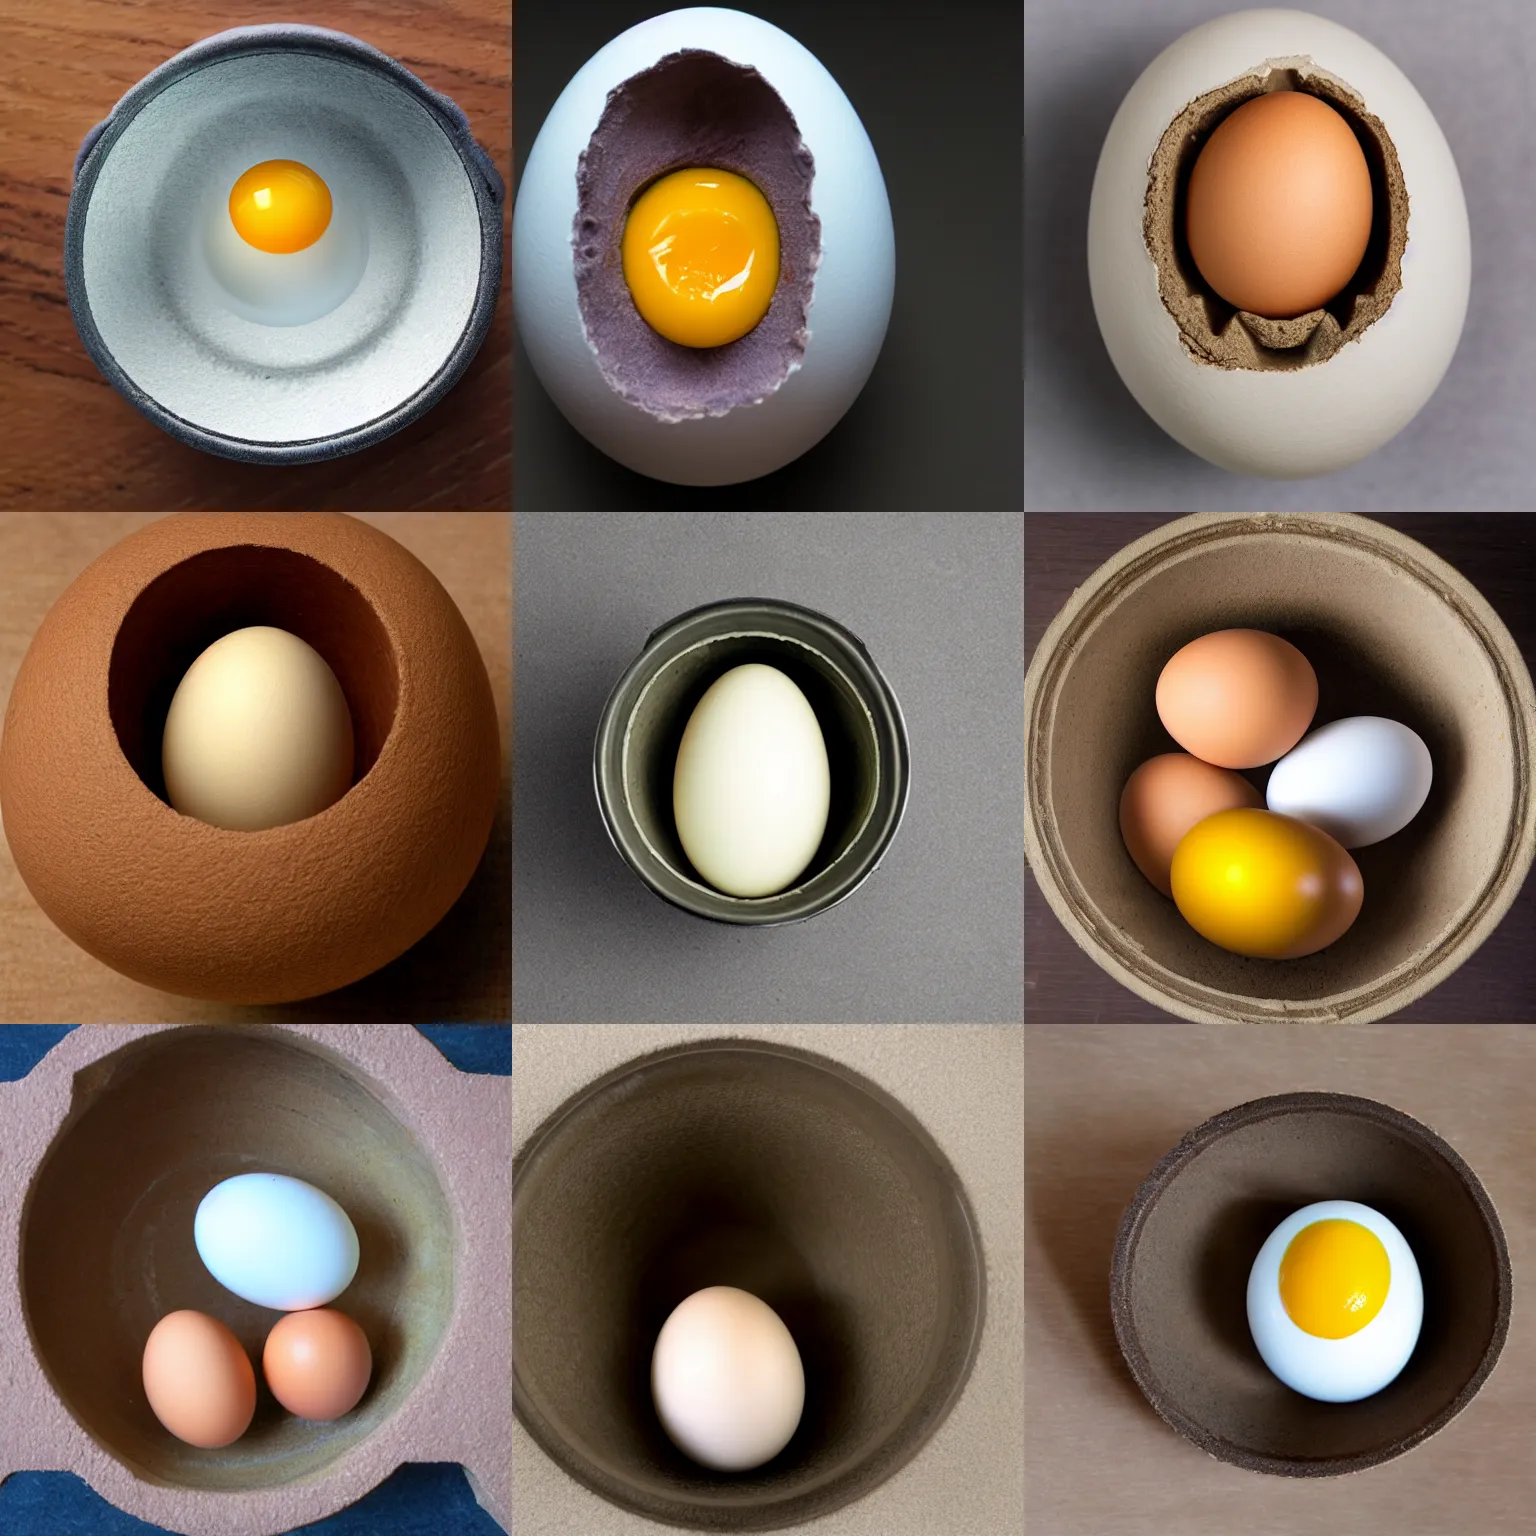 Prompt: inside a egg